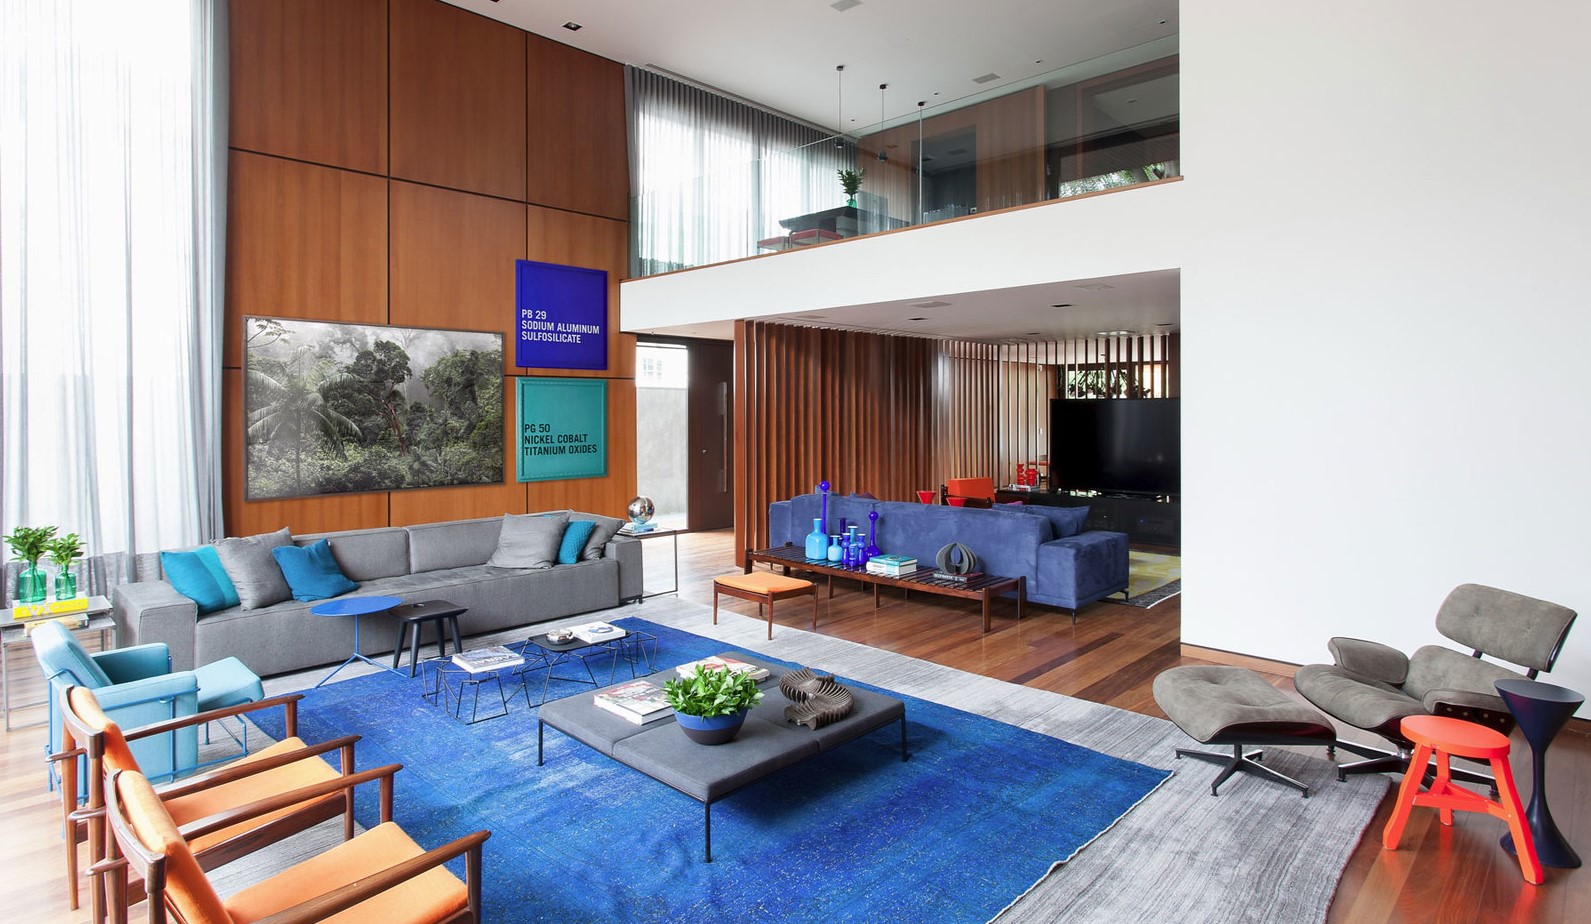 Синий ковер является акцентным декором в интерьере гостиной